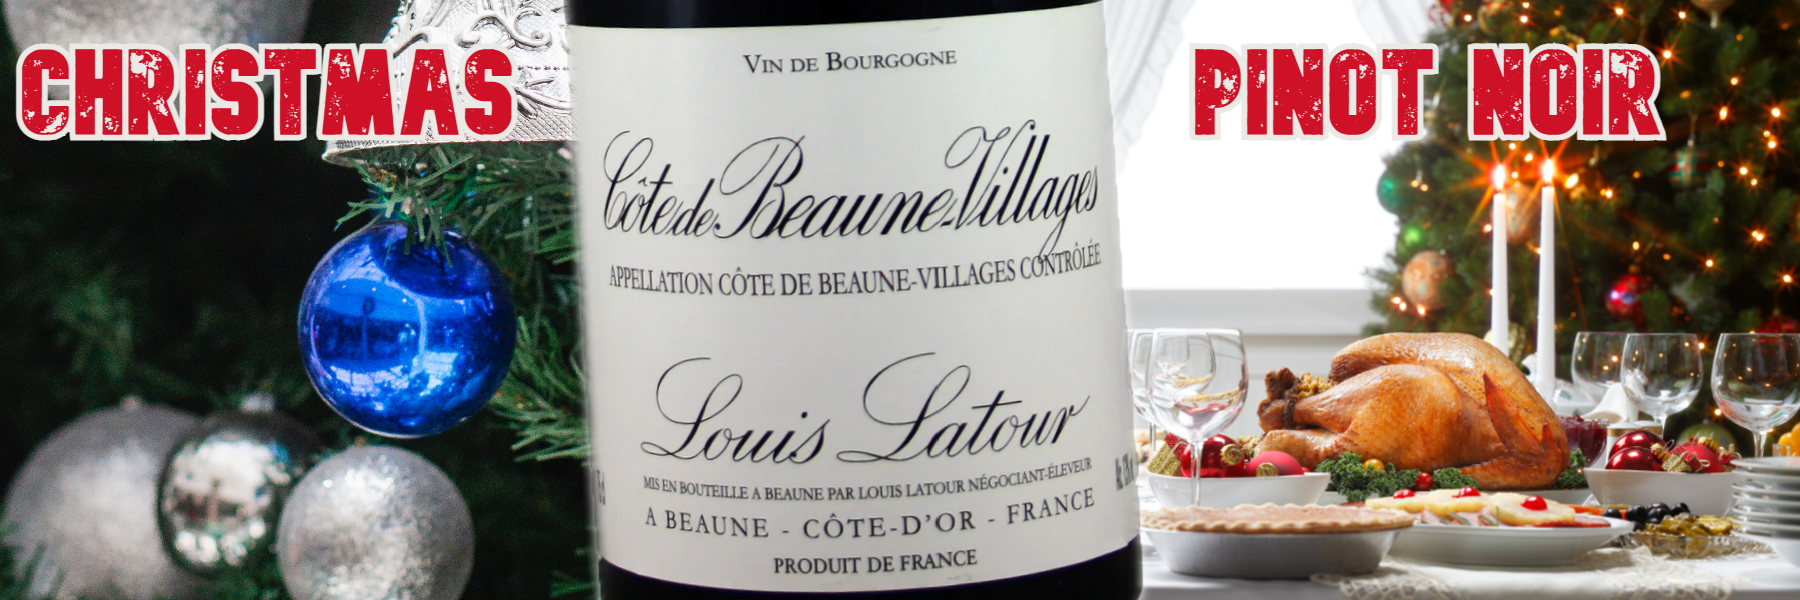 Buy Christmas Pinot Noir - Cote de Beaune Villages, Louis Latour, 2017 for £27.99/bottle